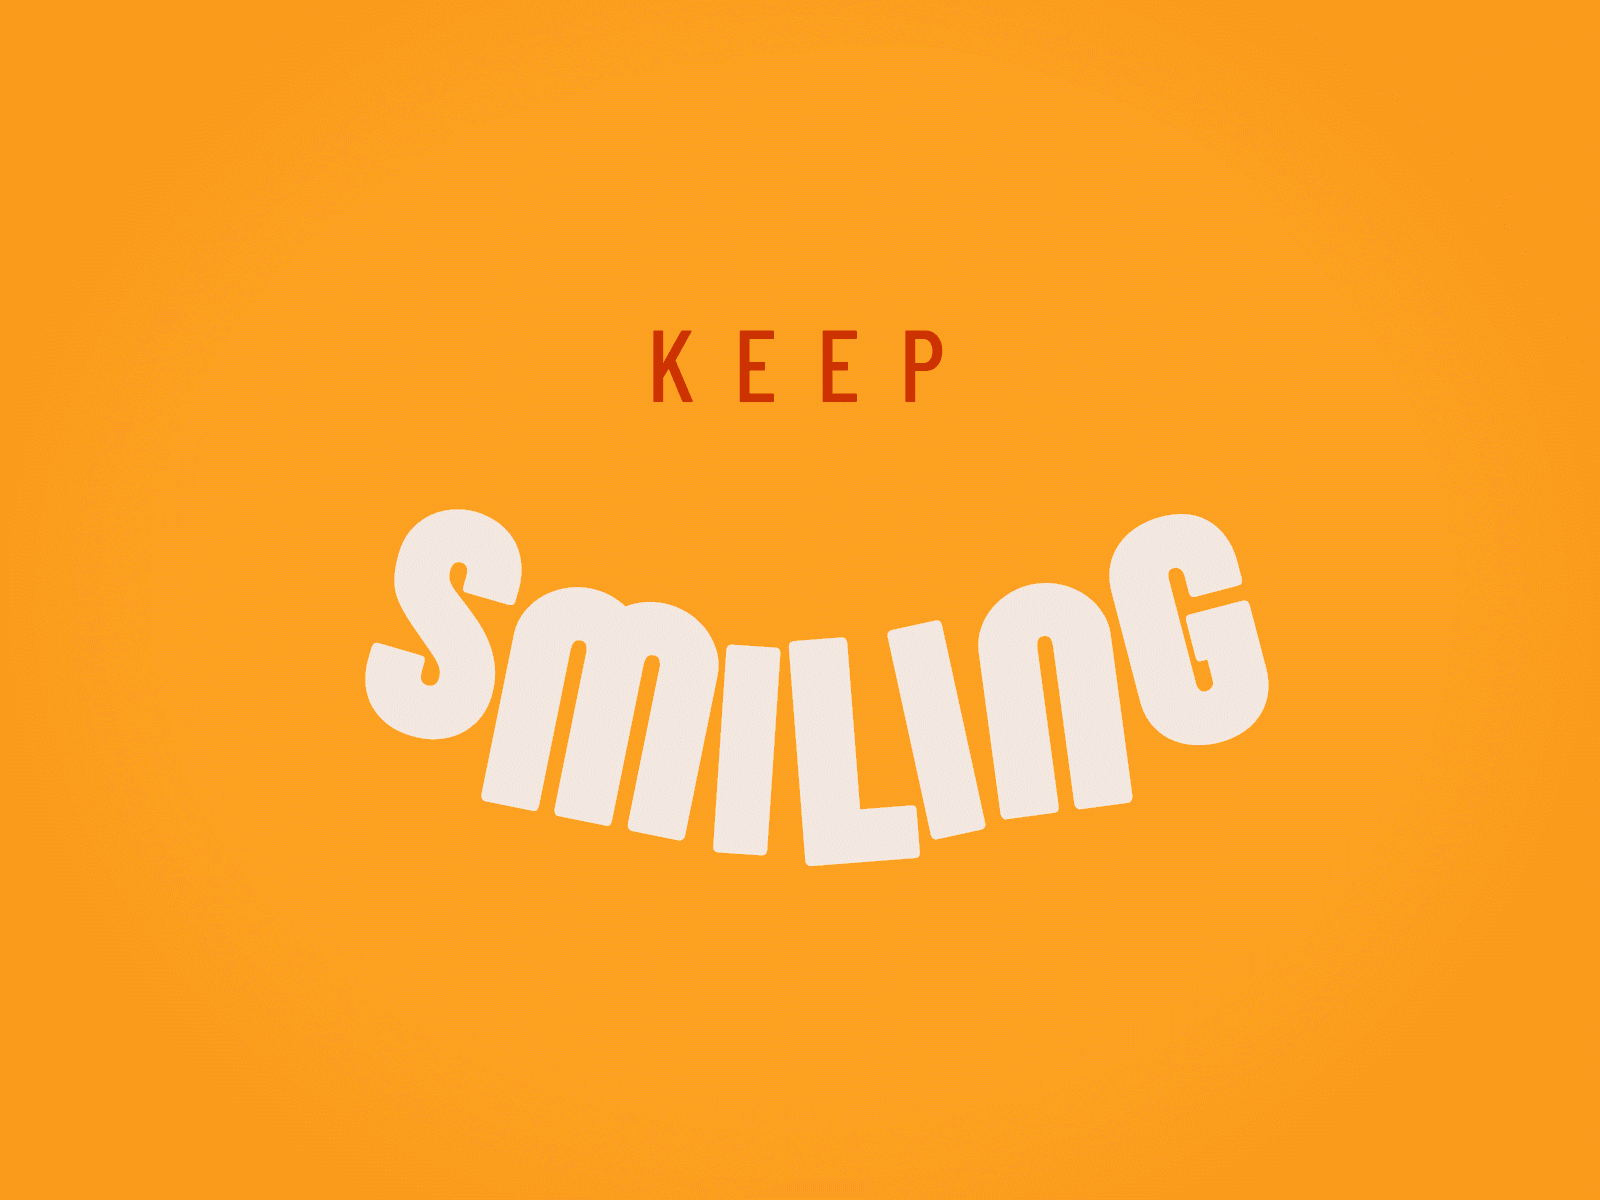 Keep smiling!